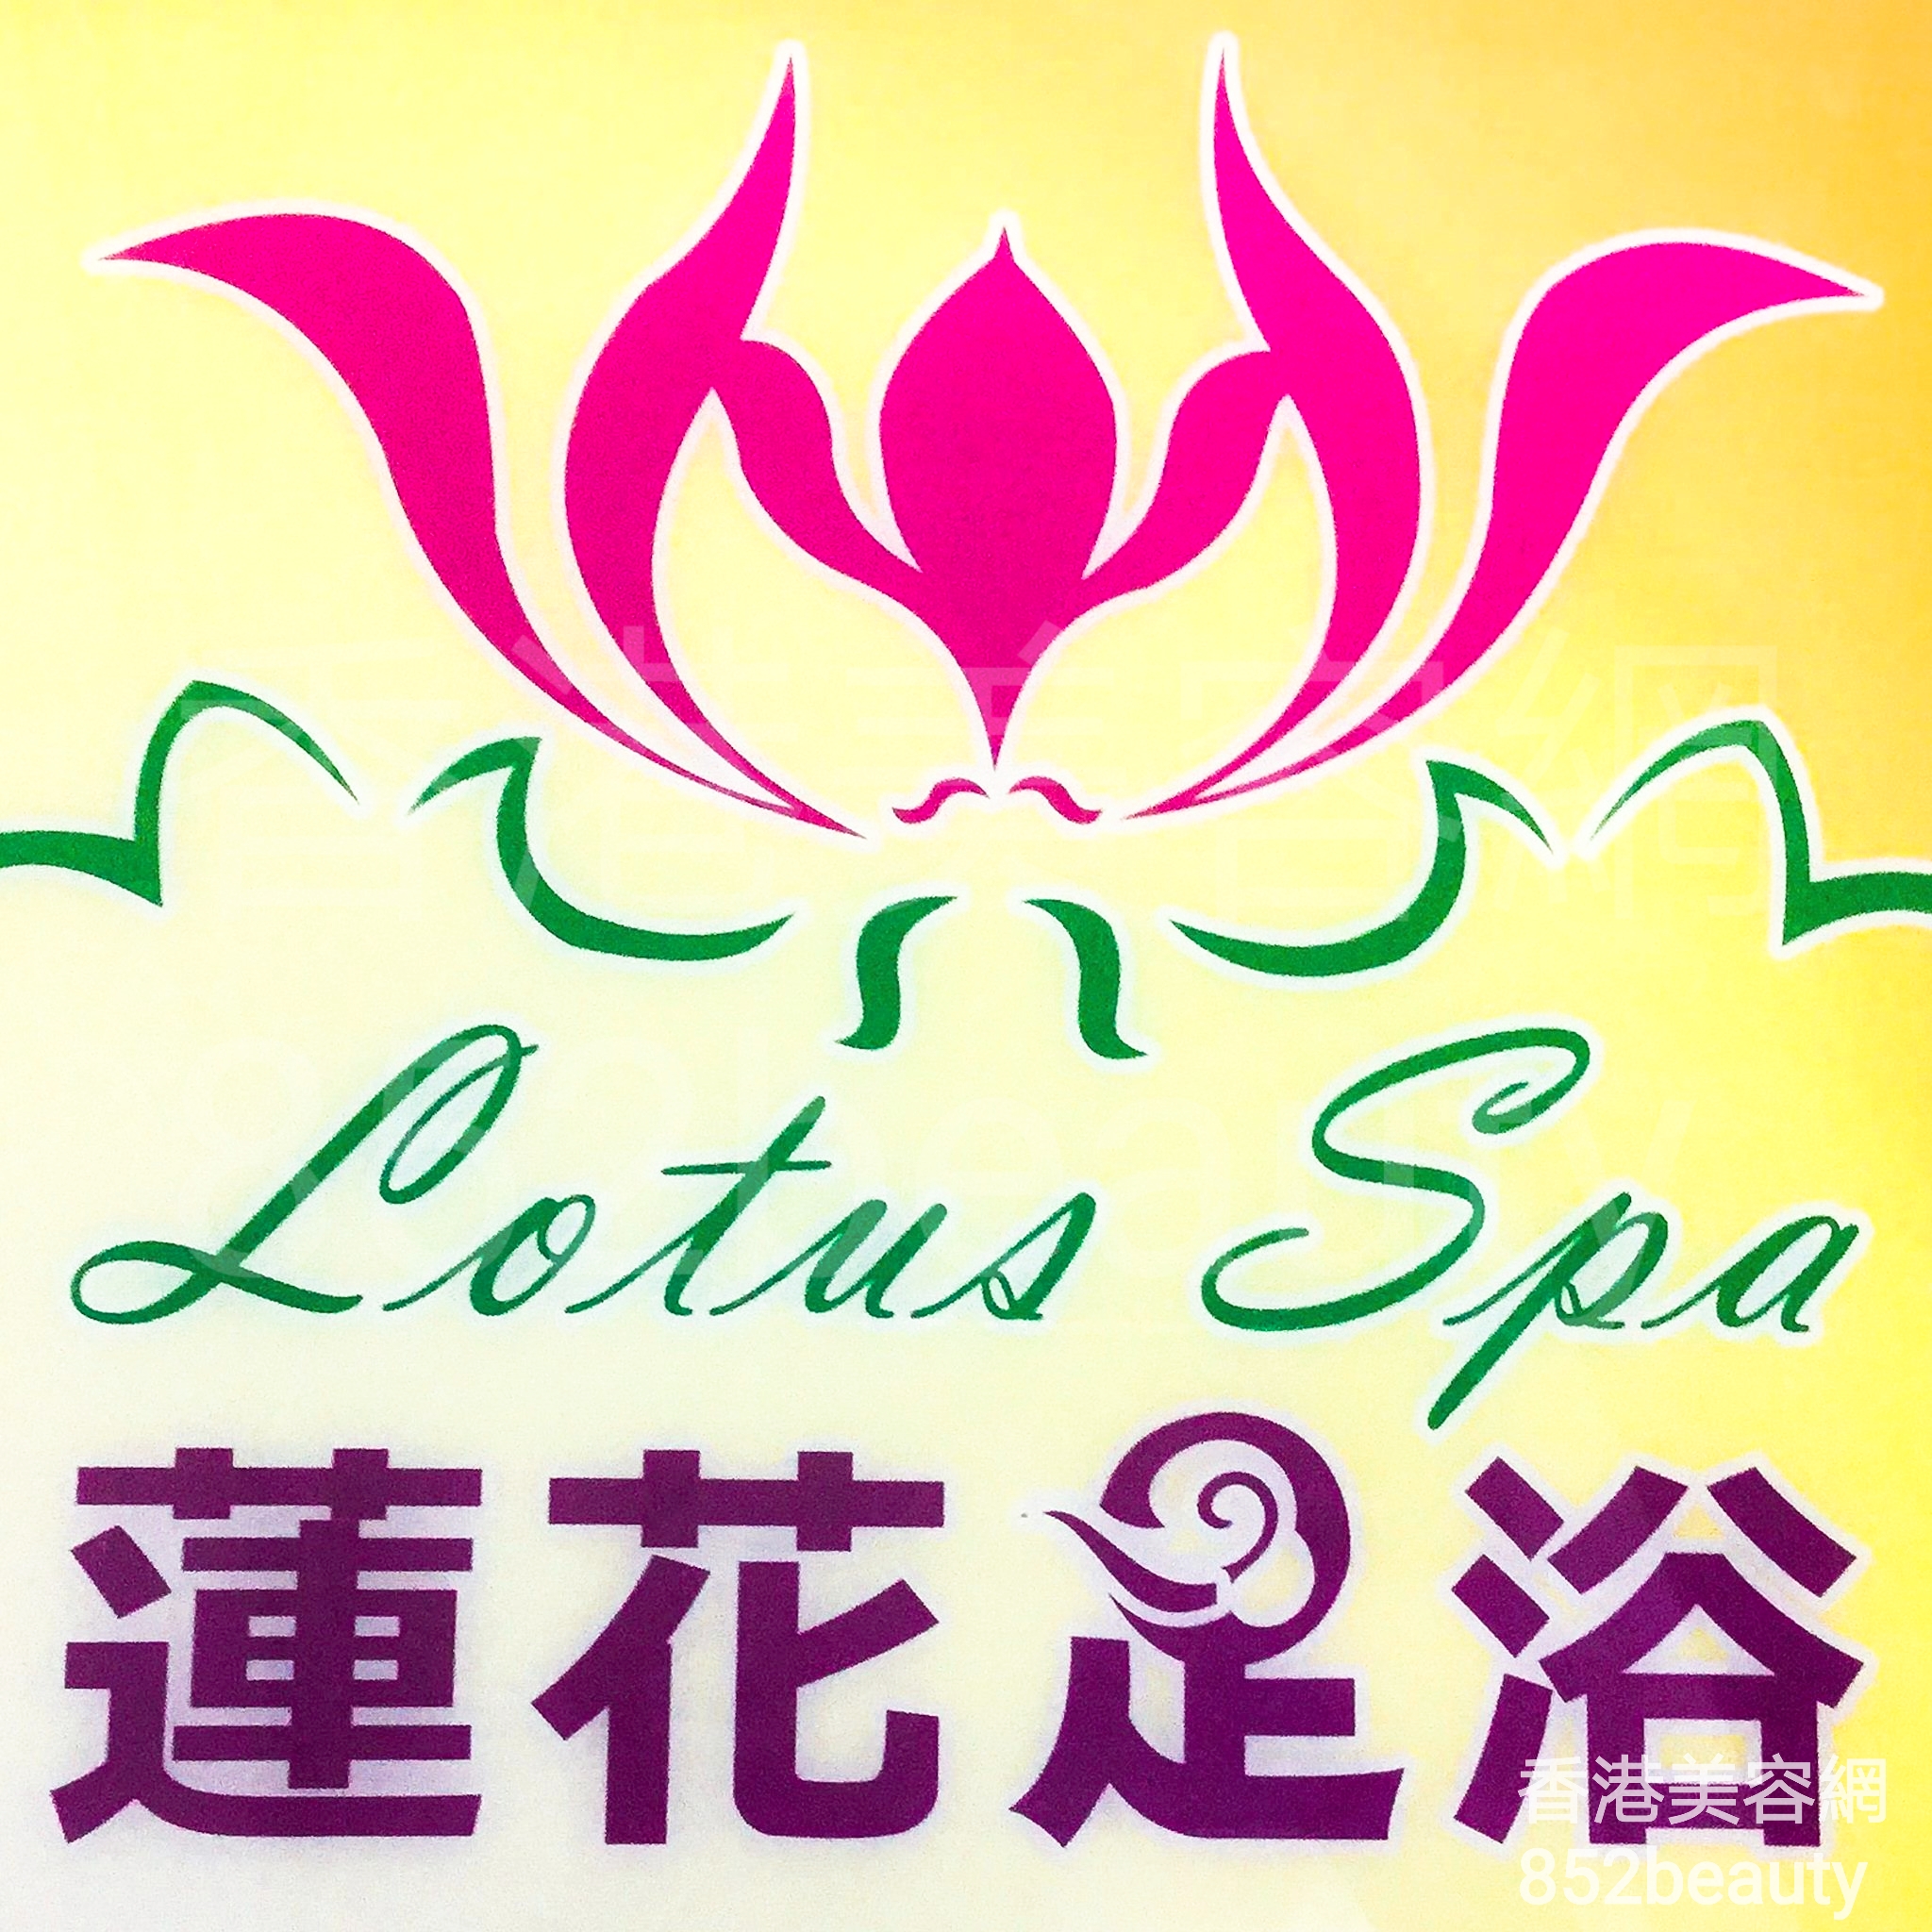 美容院: Lotus spa 蓮花足浴